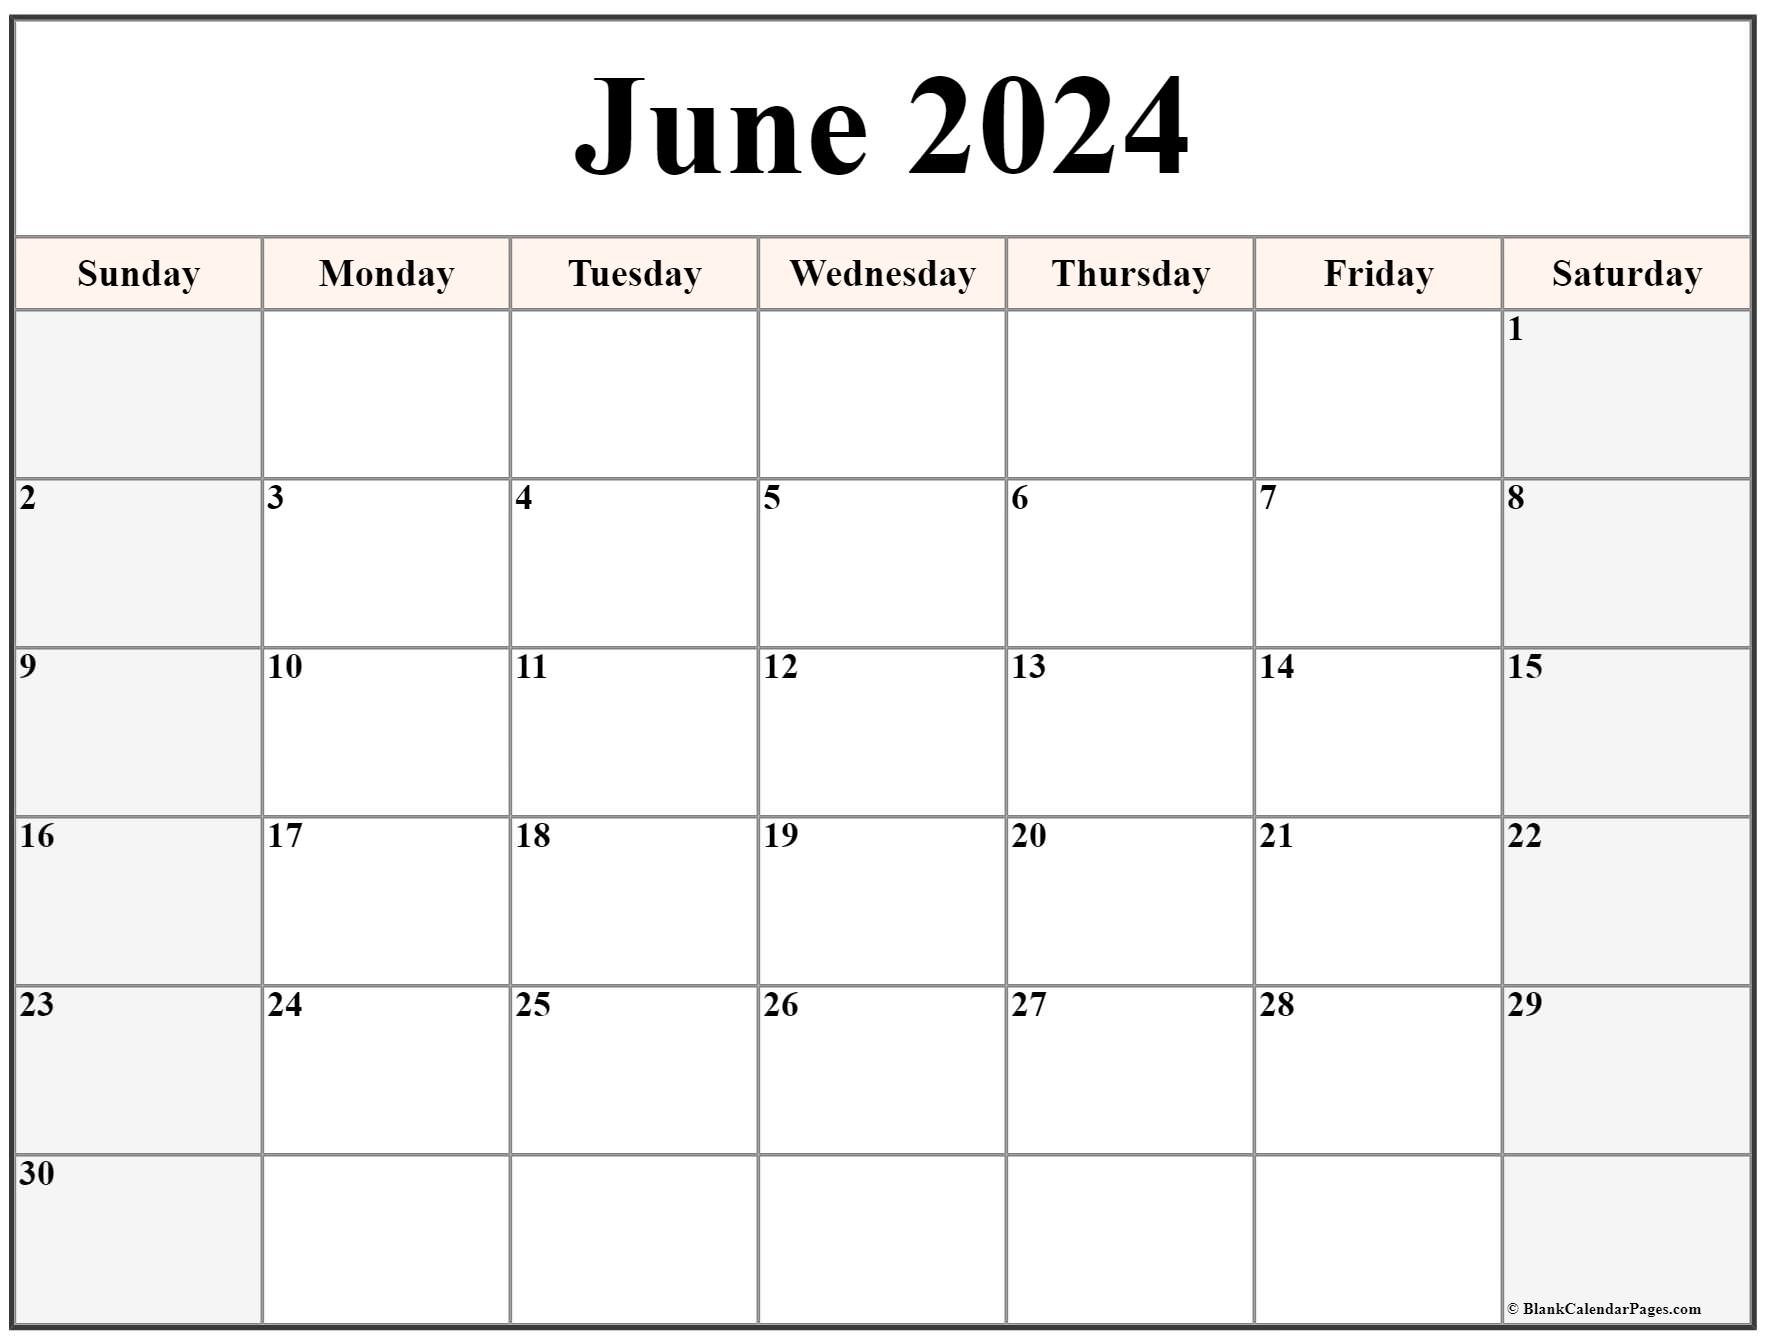 june-calendar-2023-with-notes-calendar-quickly-photos